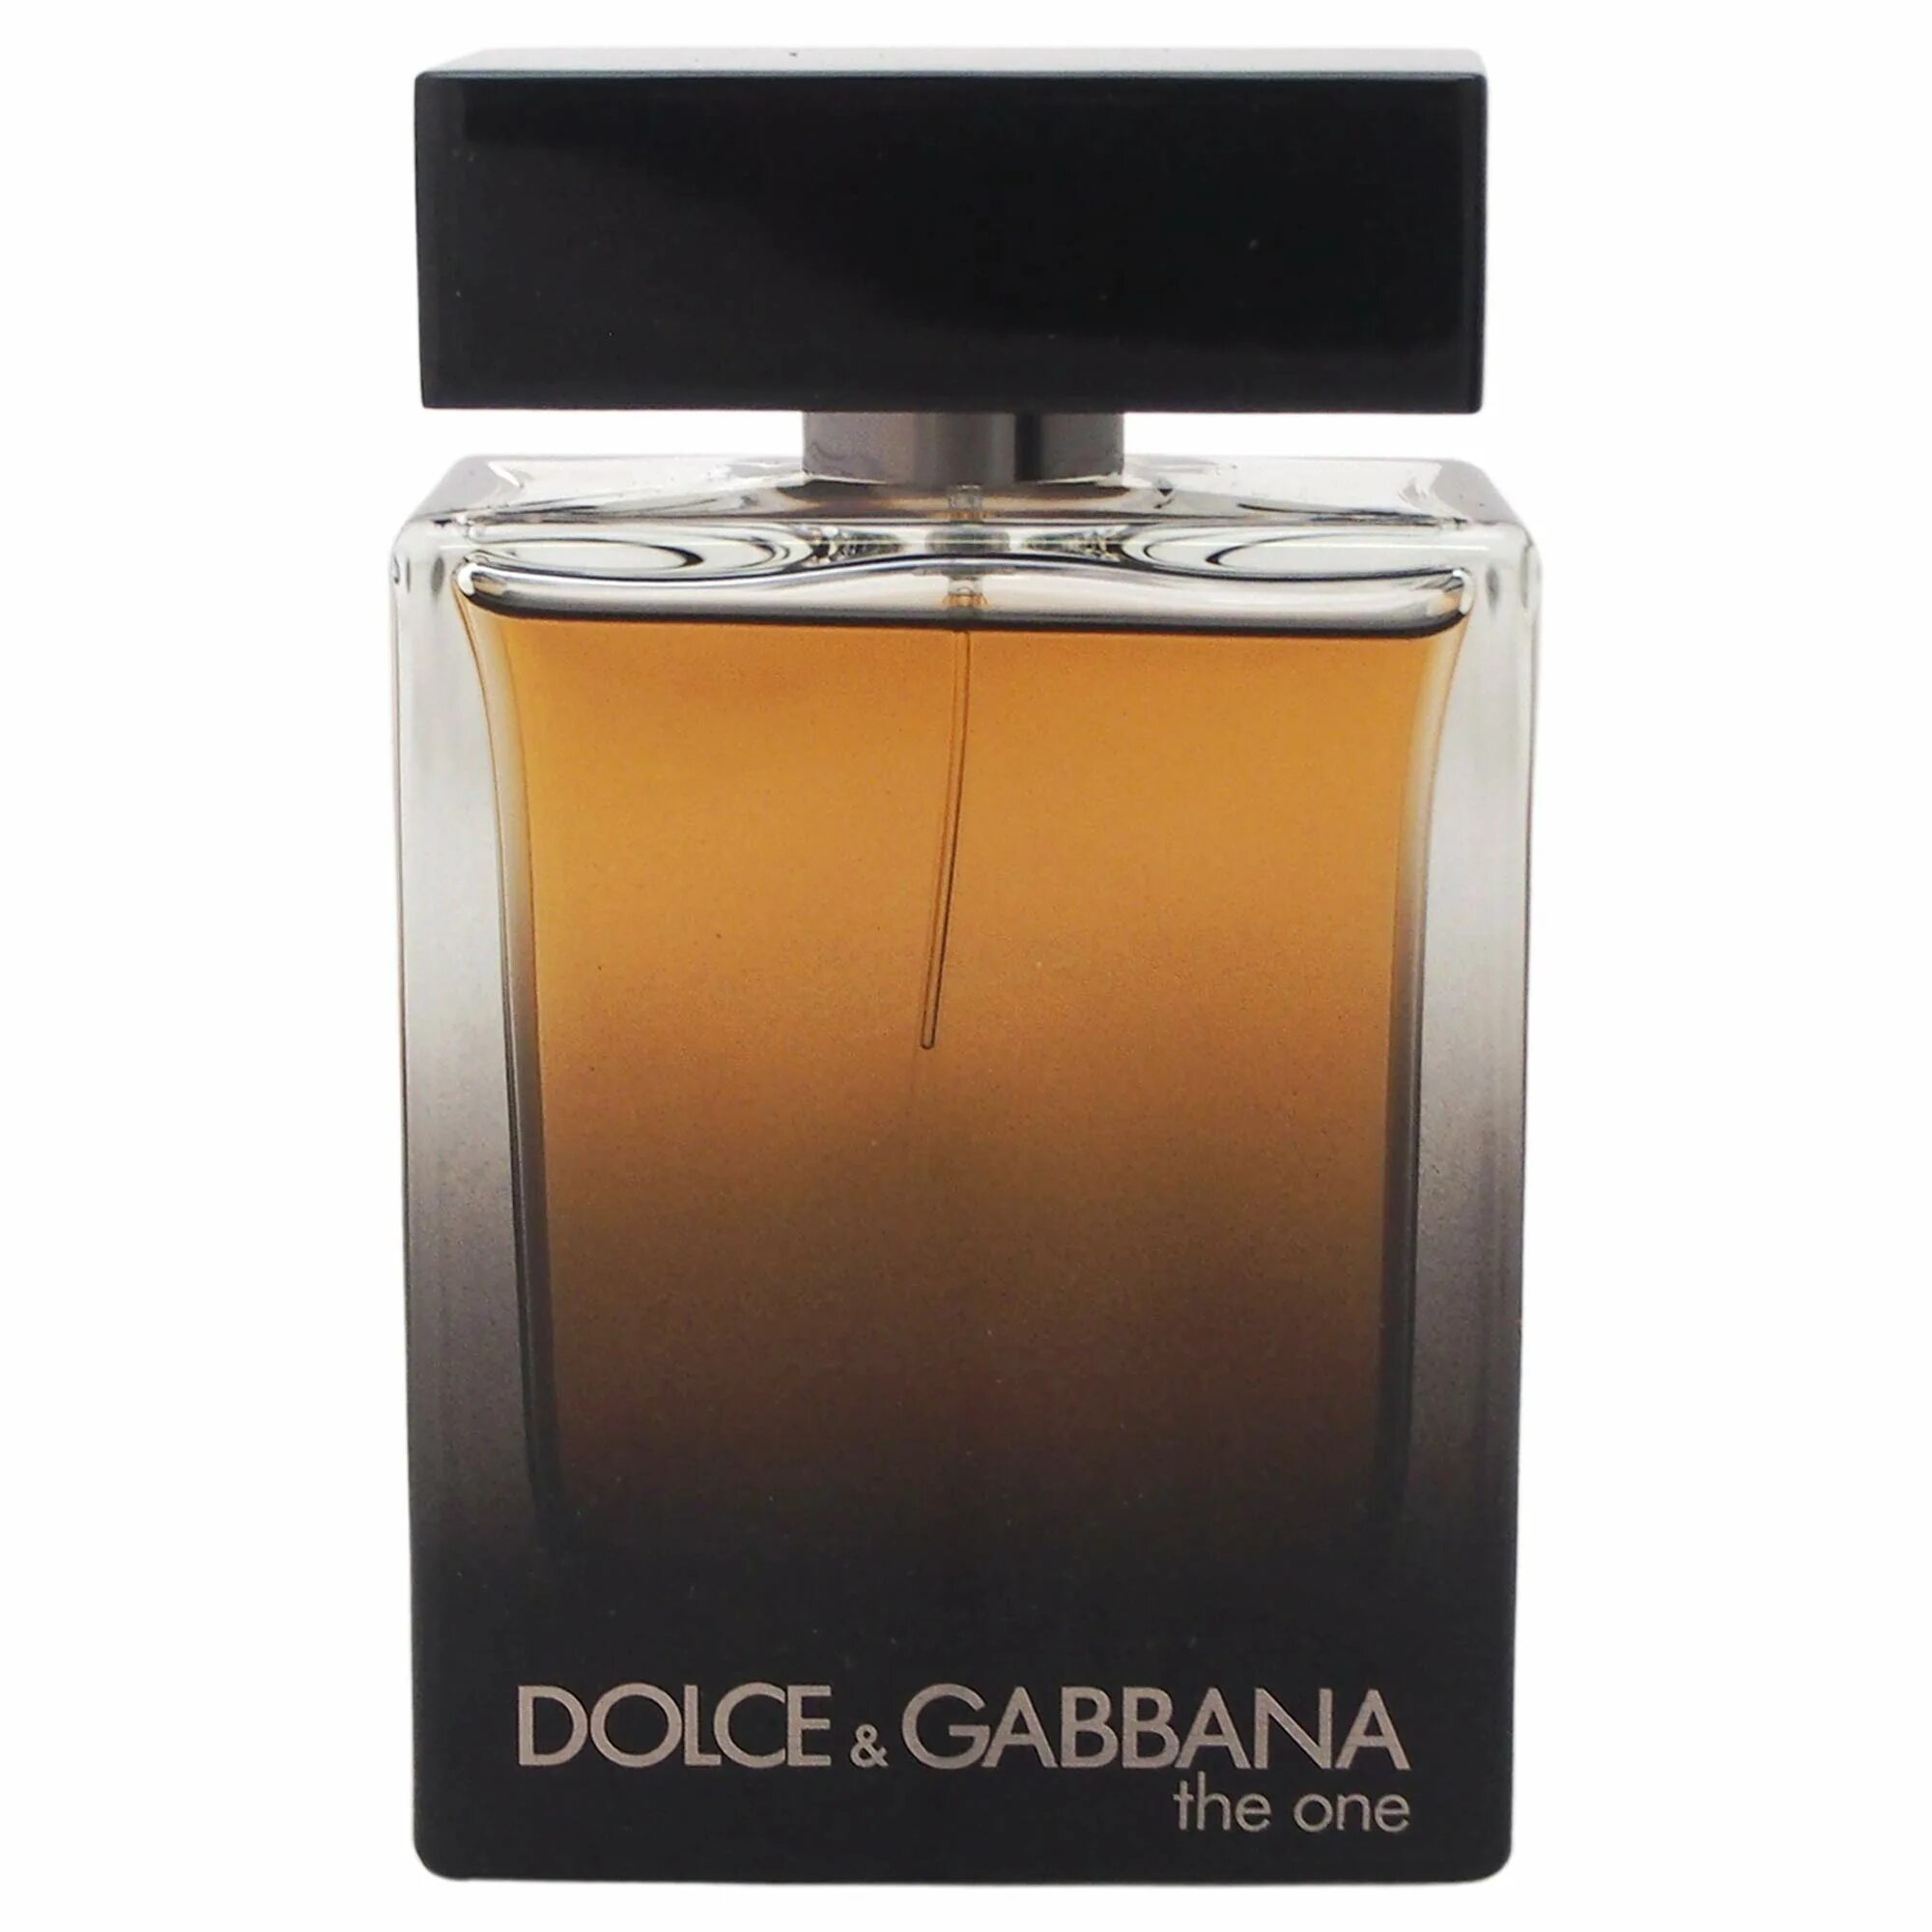 Dolce Gabbana the one for men 100 мл. Dolce Gabbana the one 100ml. Dolce Gabbana the one 100ml мужские. Dolce Gabbana the one for men Eau de Parfum. Dolce gabbana 1